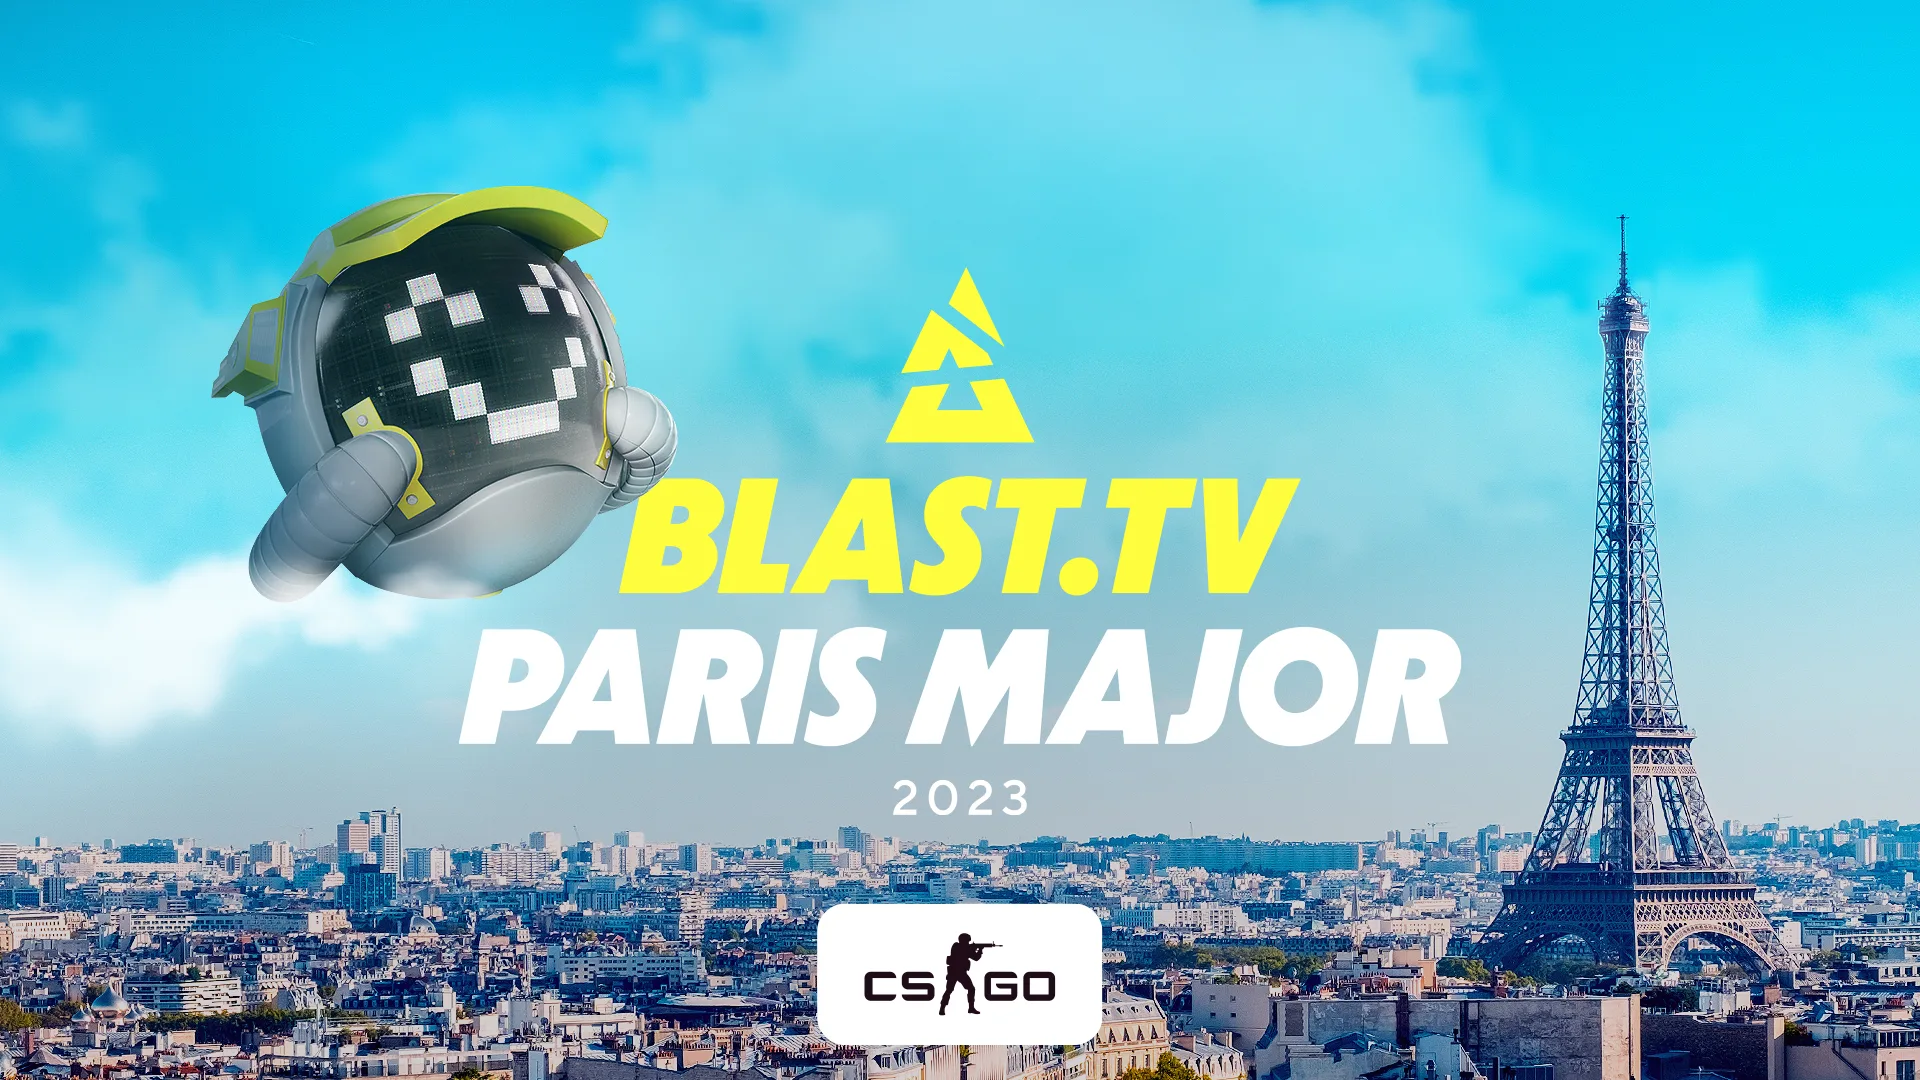 Клиент BetBoom выиграл более 1,5 миллиона рублей с экспресса на BLAST.tv Paris Major 2023